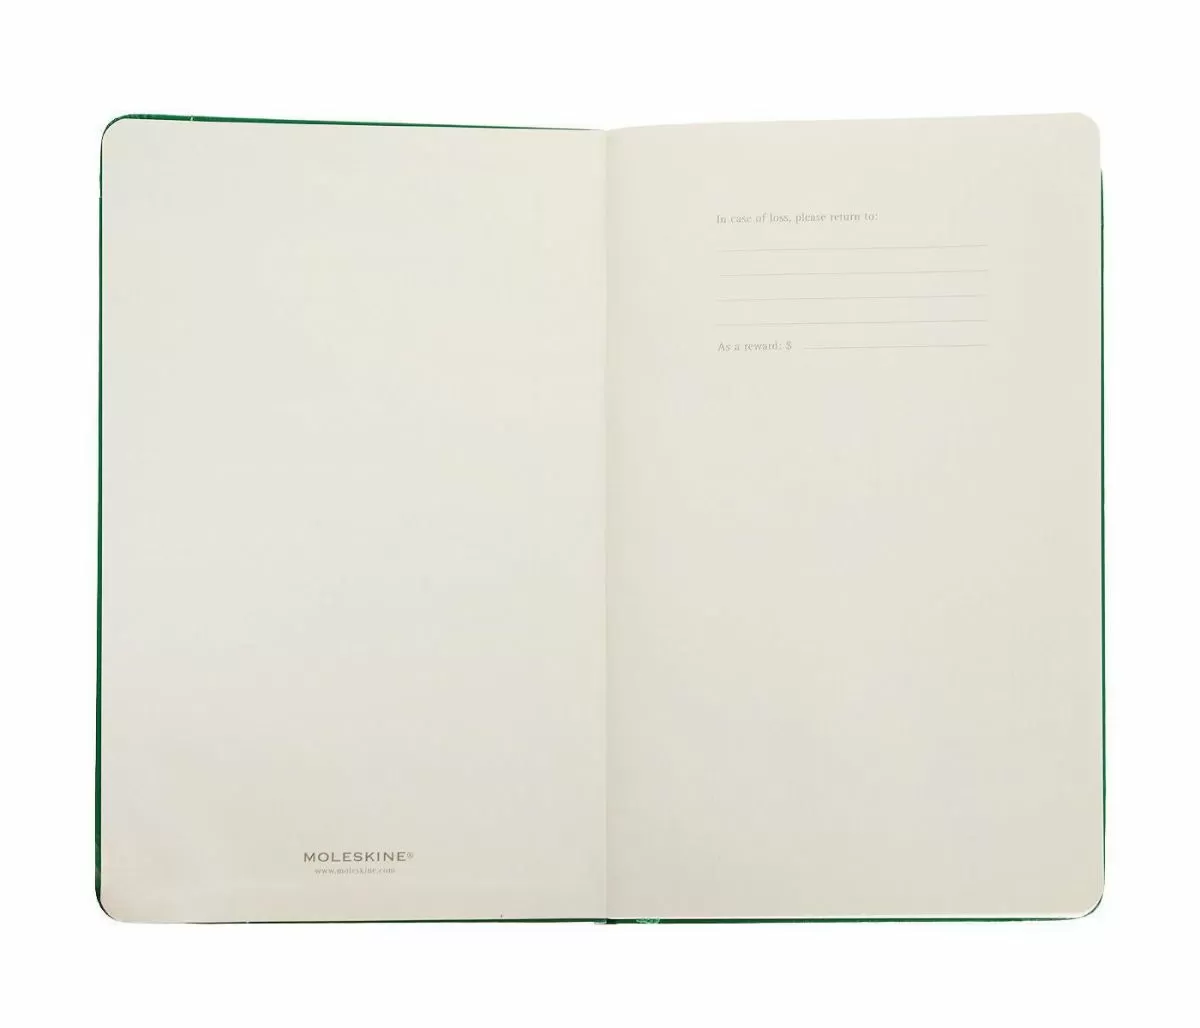 Записная книжка Classic (нелинованная) Large зеленый